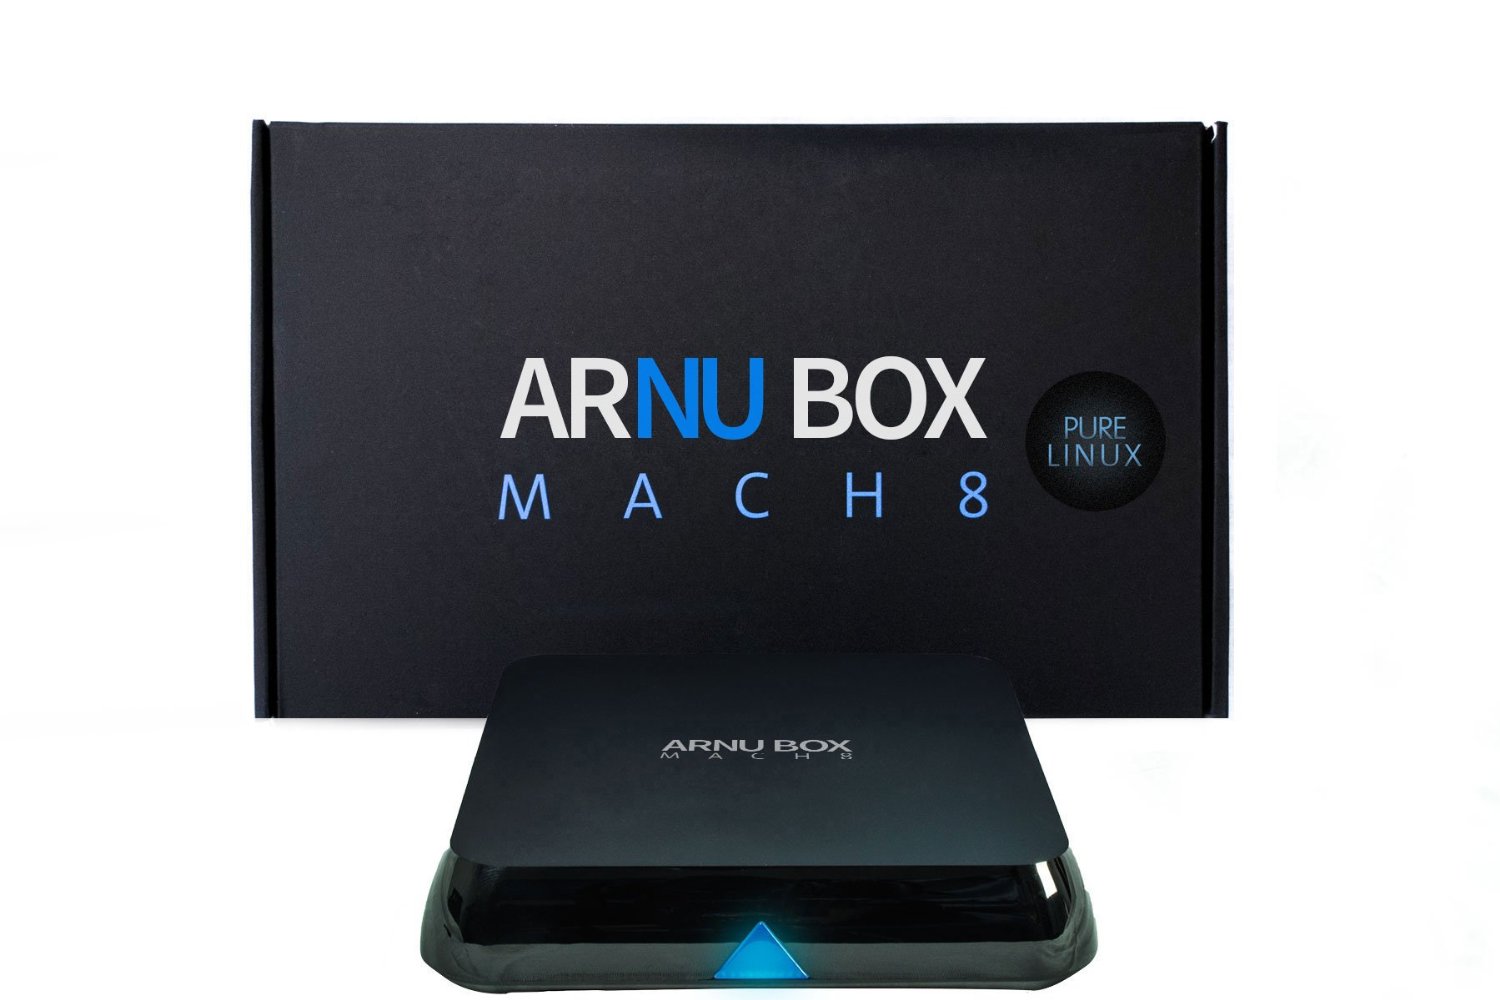 Review: Arnu Box Mach 8 Linux